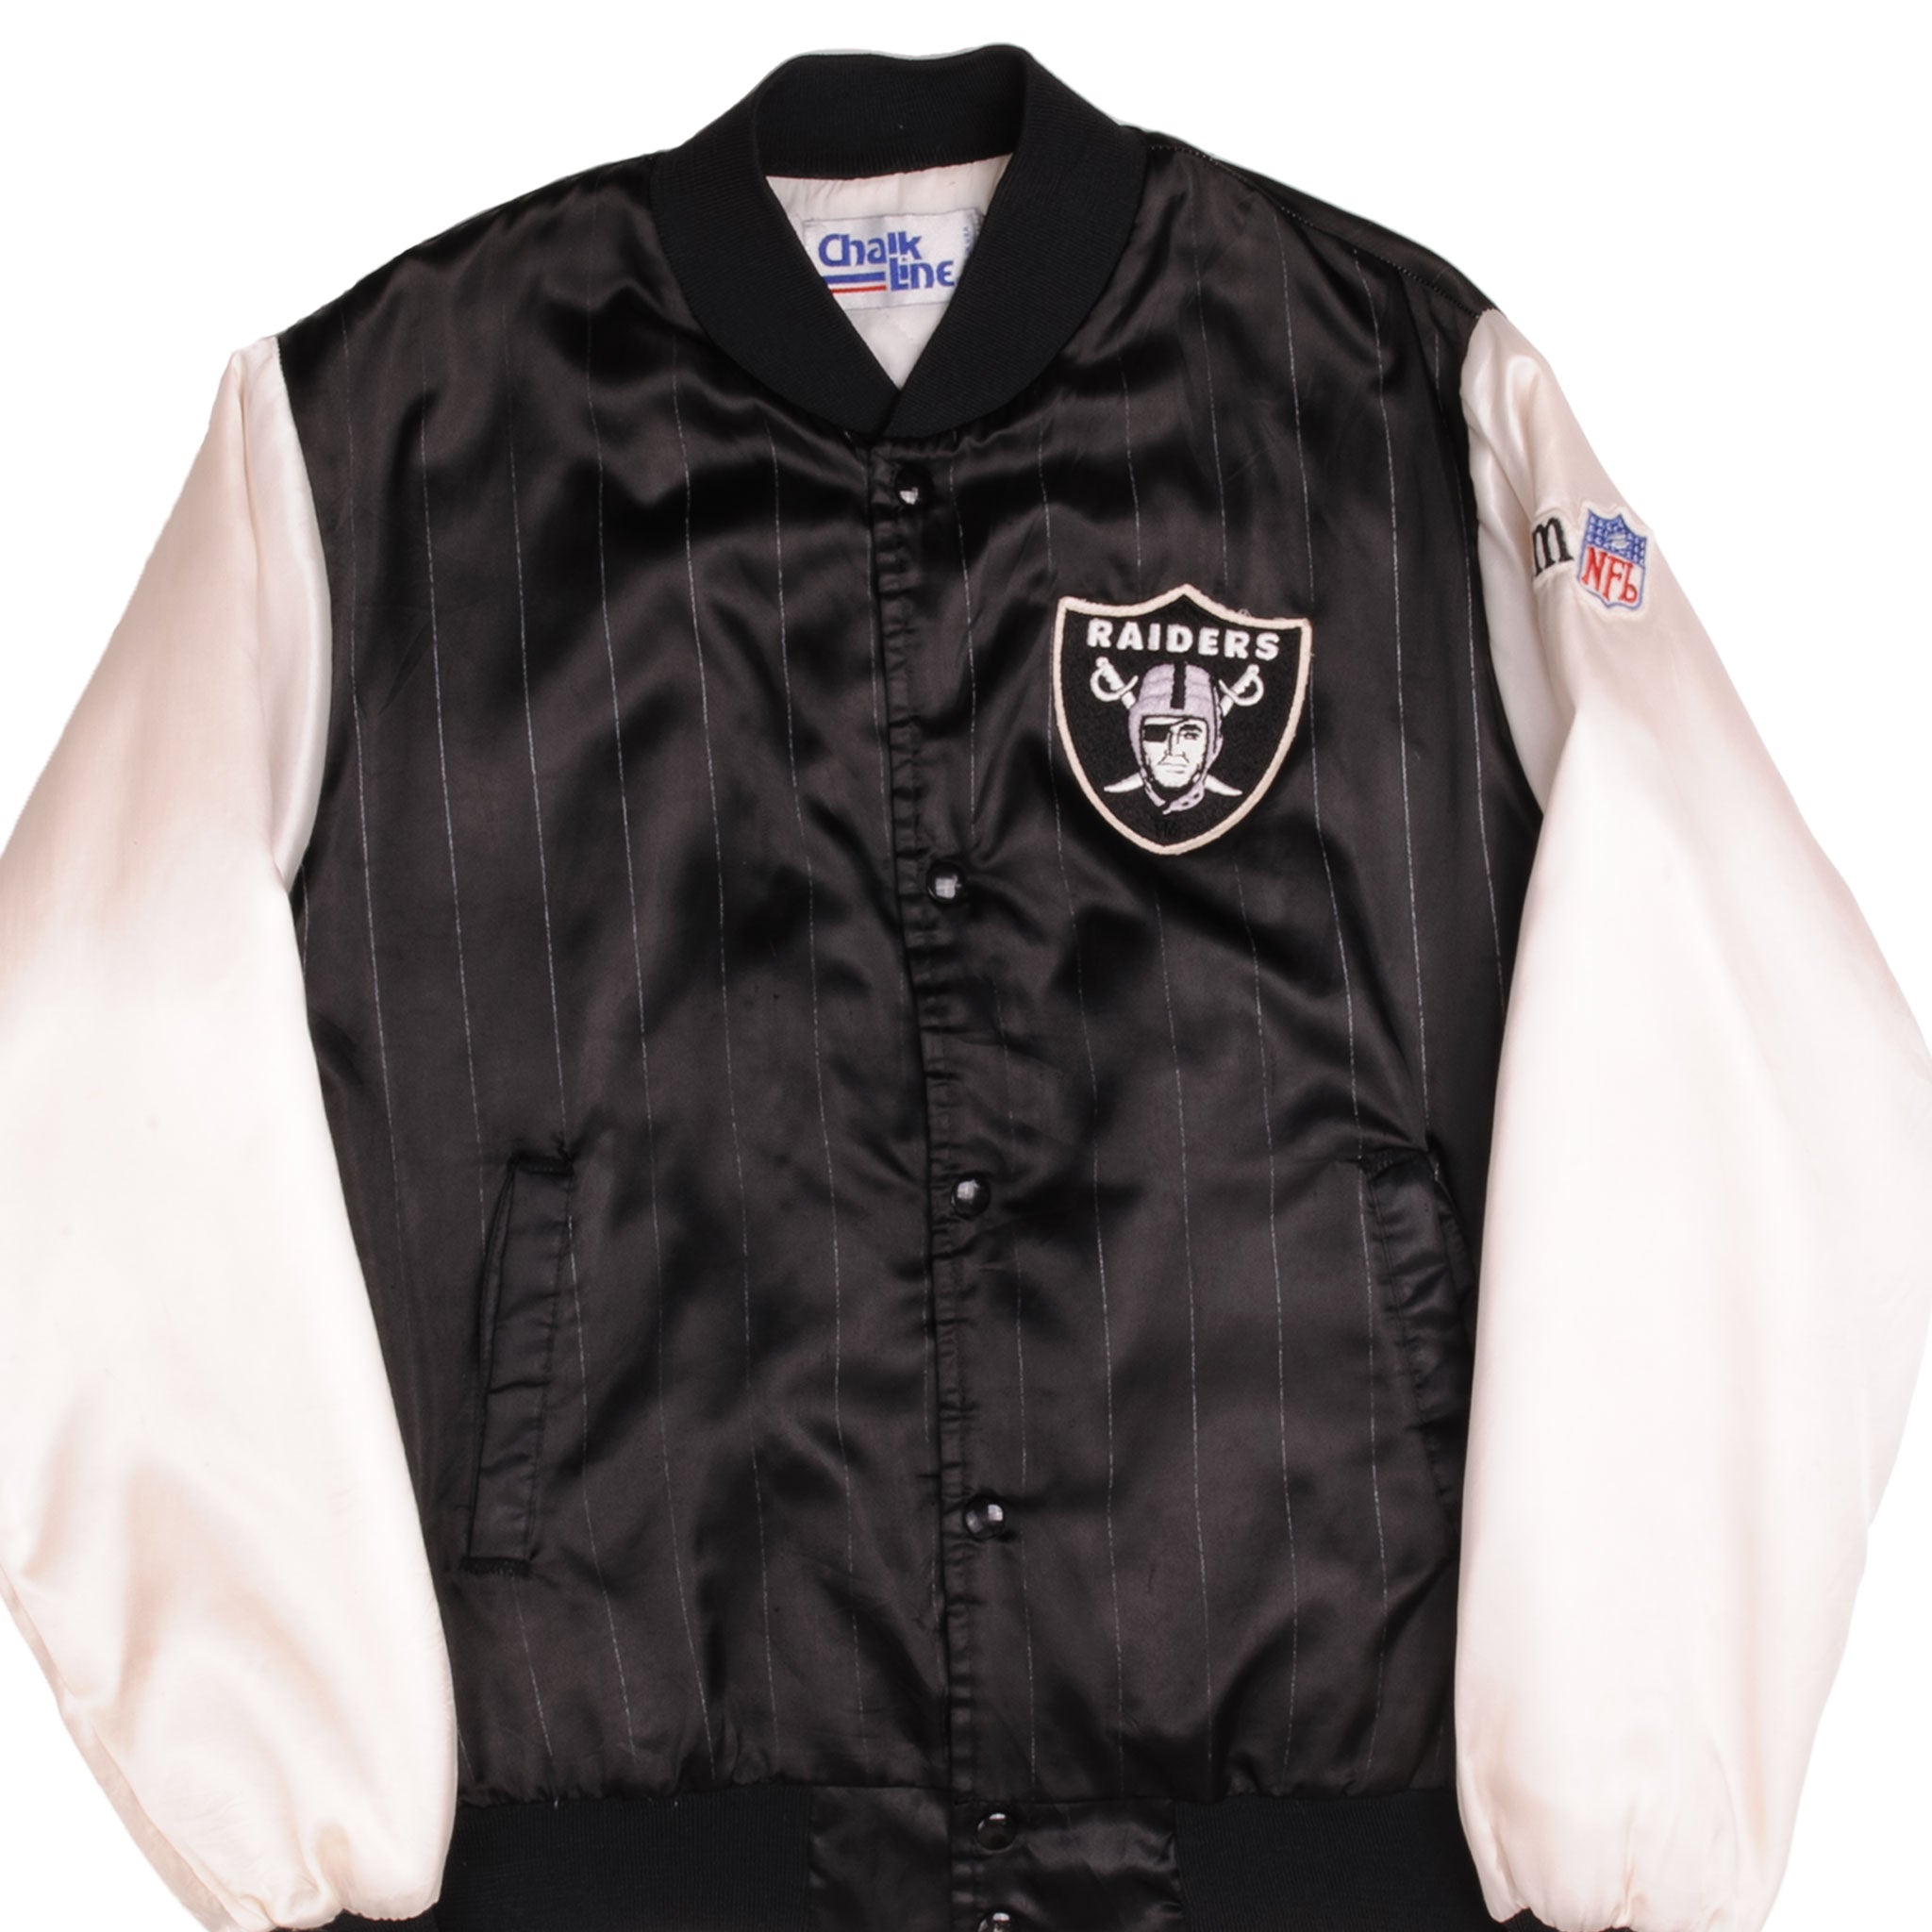 90s LA Raiders vintage NFL button front jersey. Large